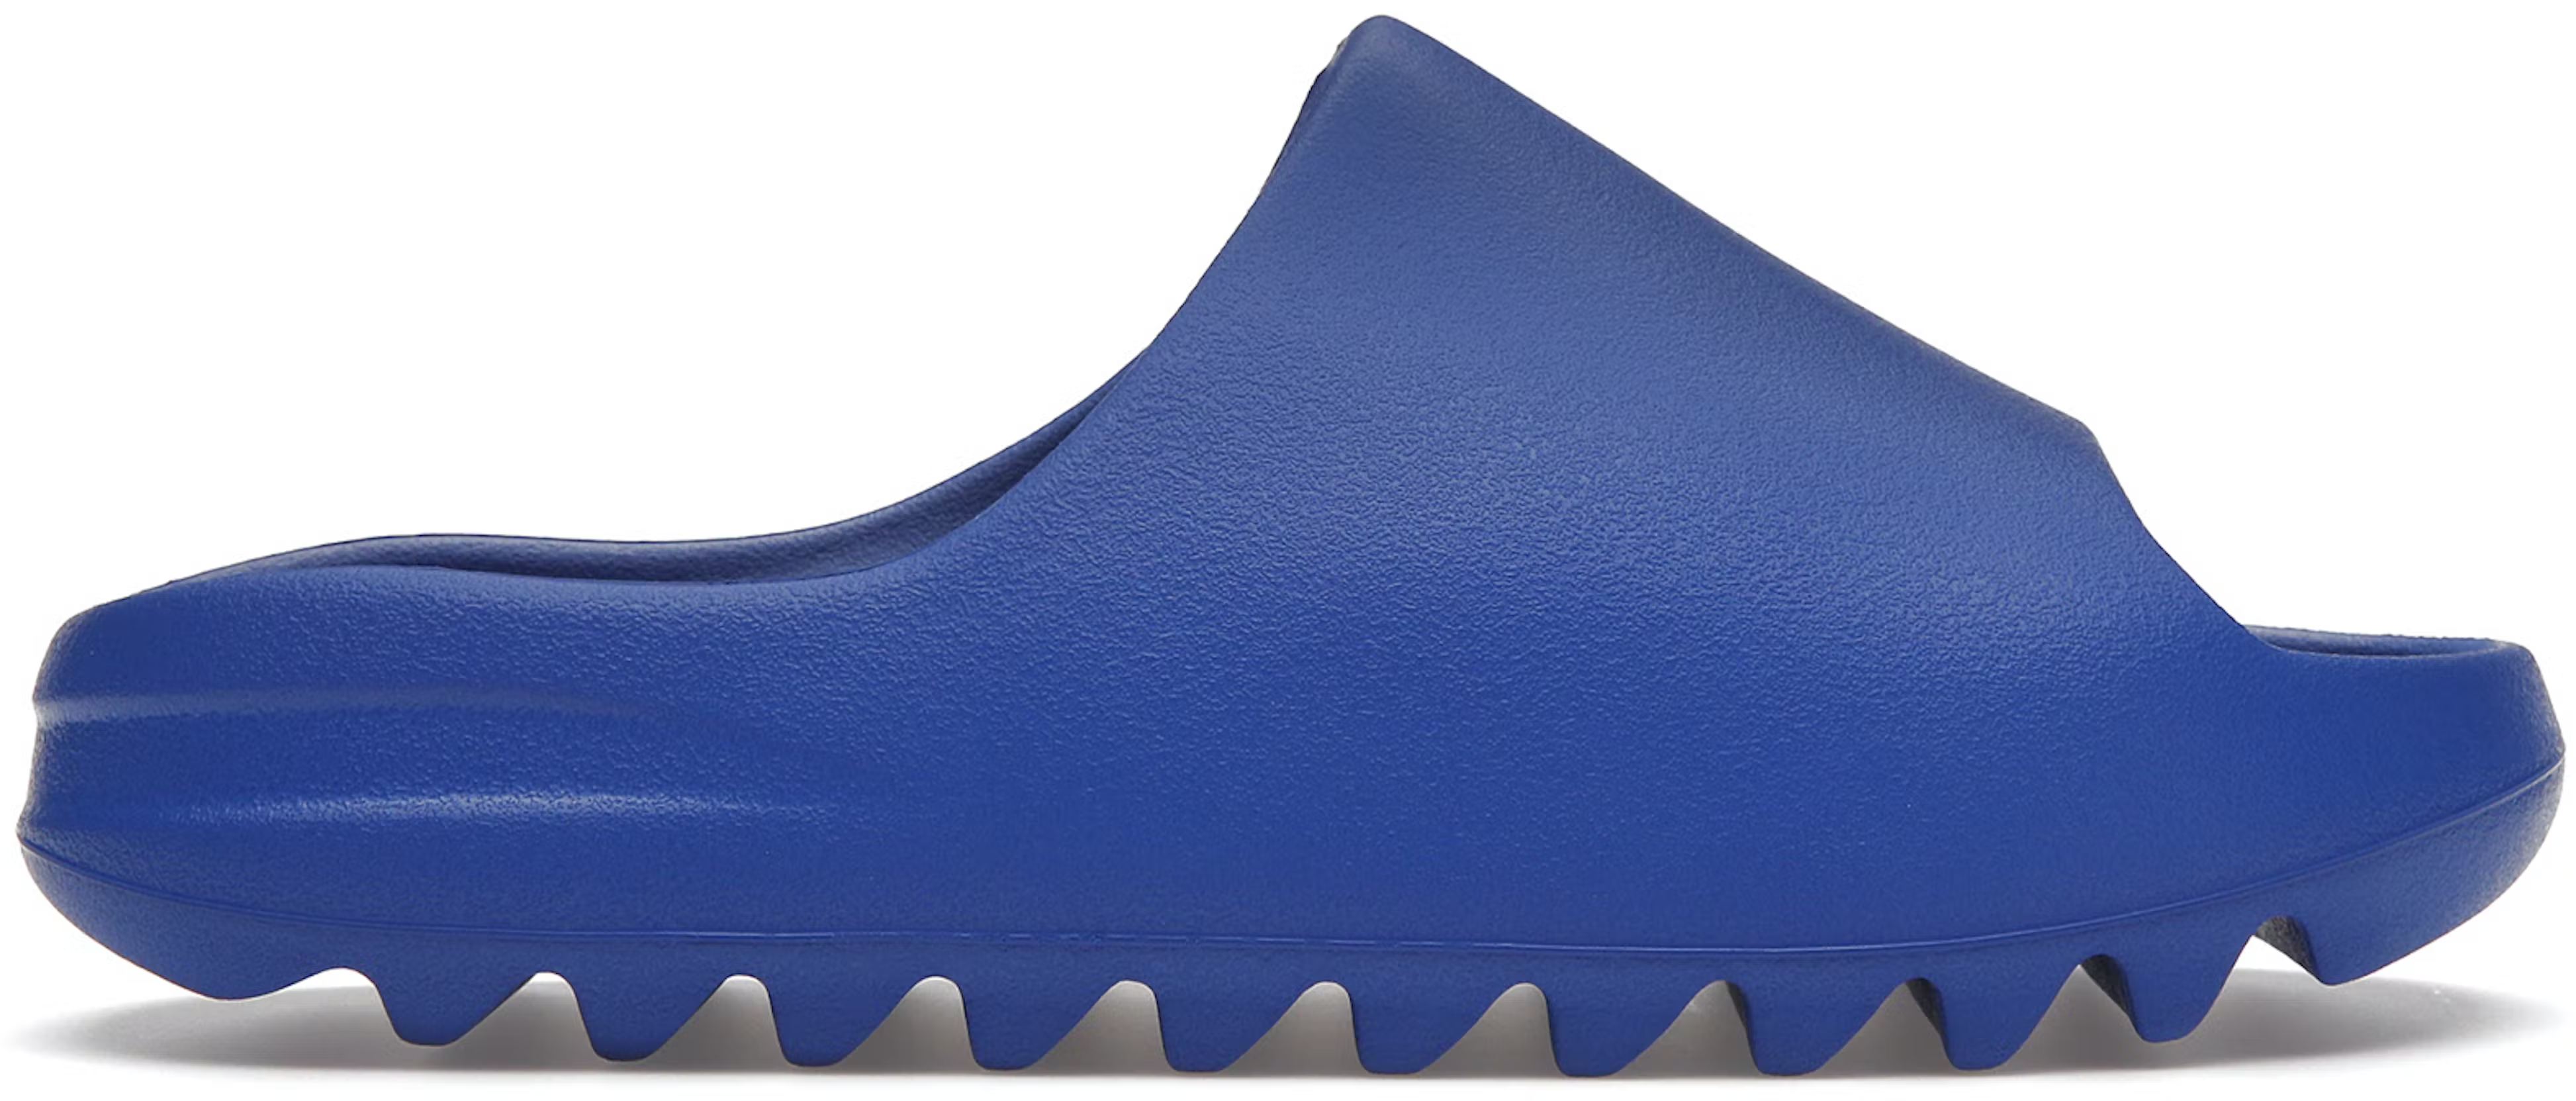 adidas originals yeezy slides azure blue